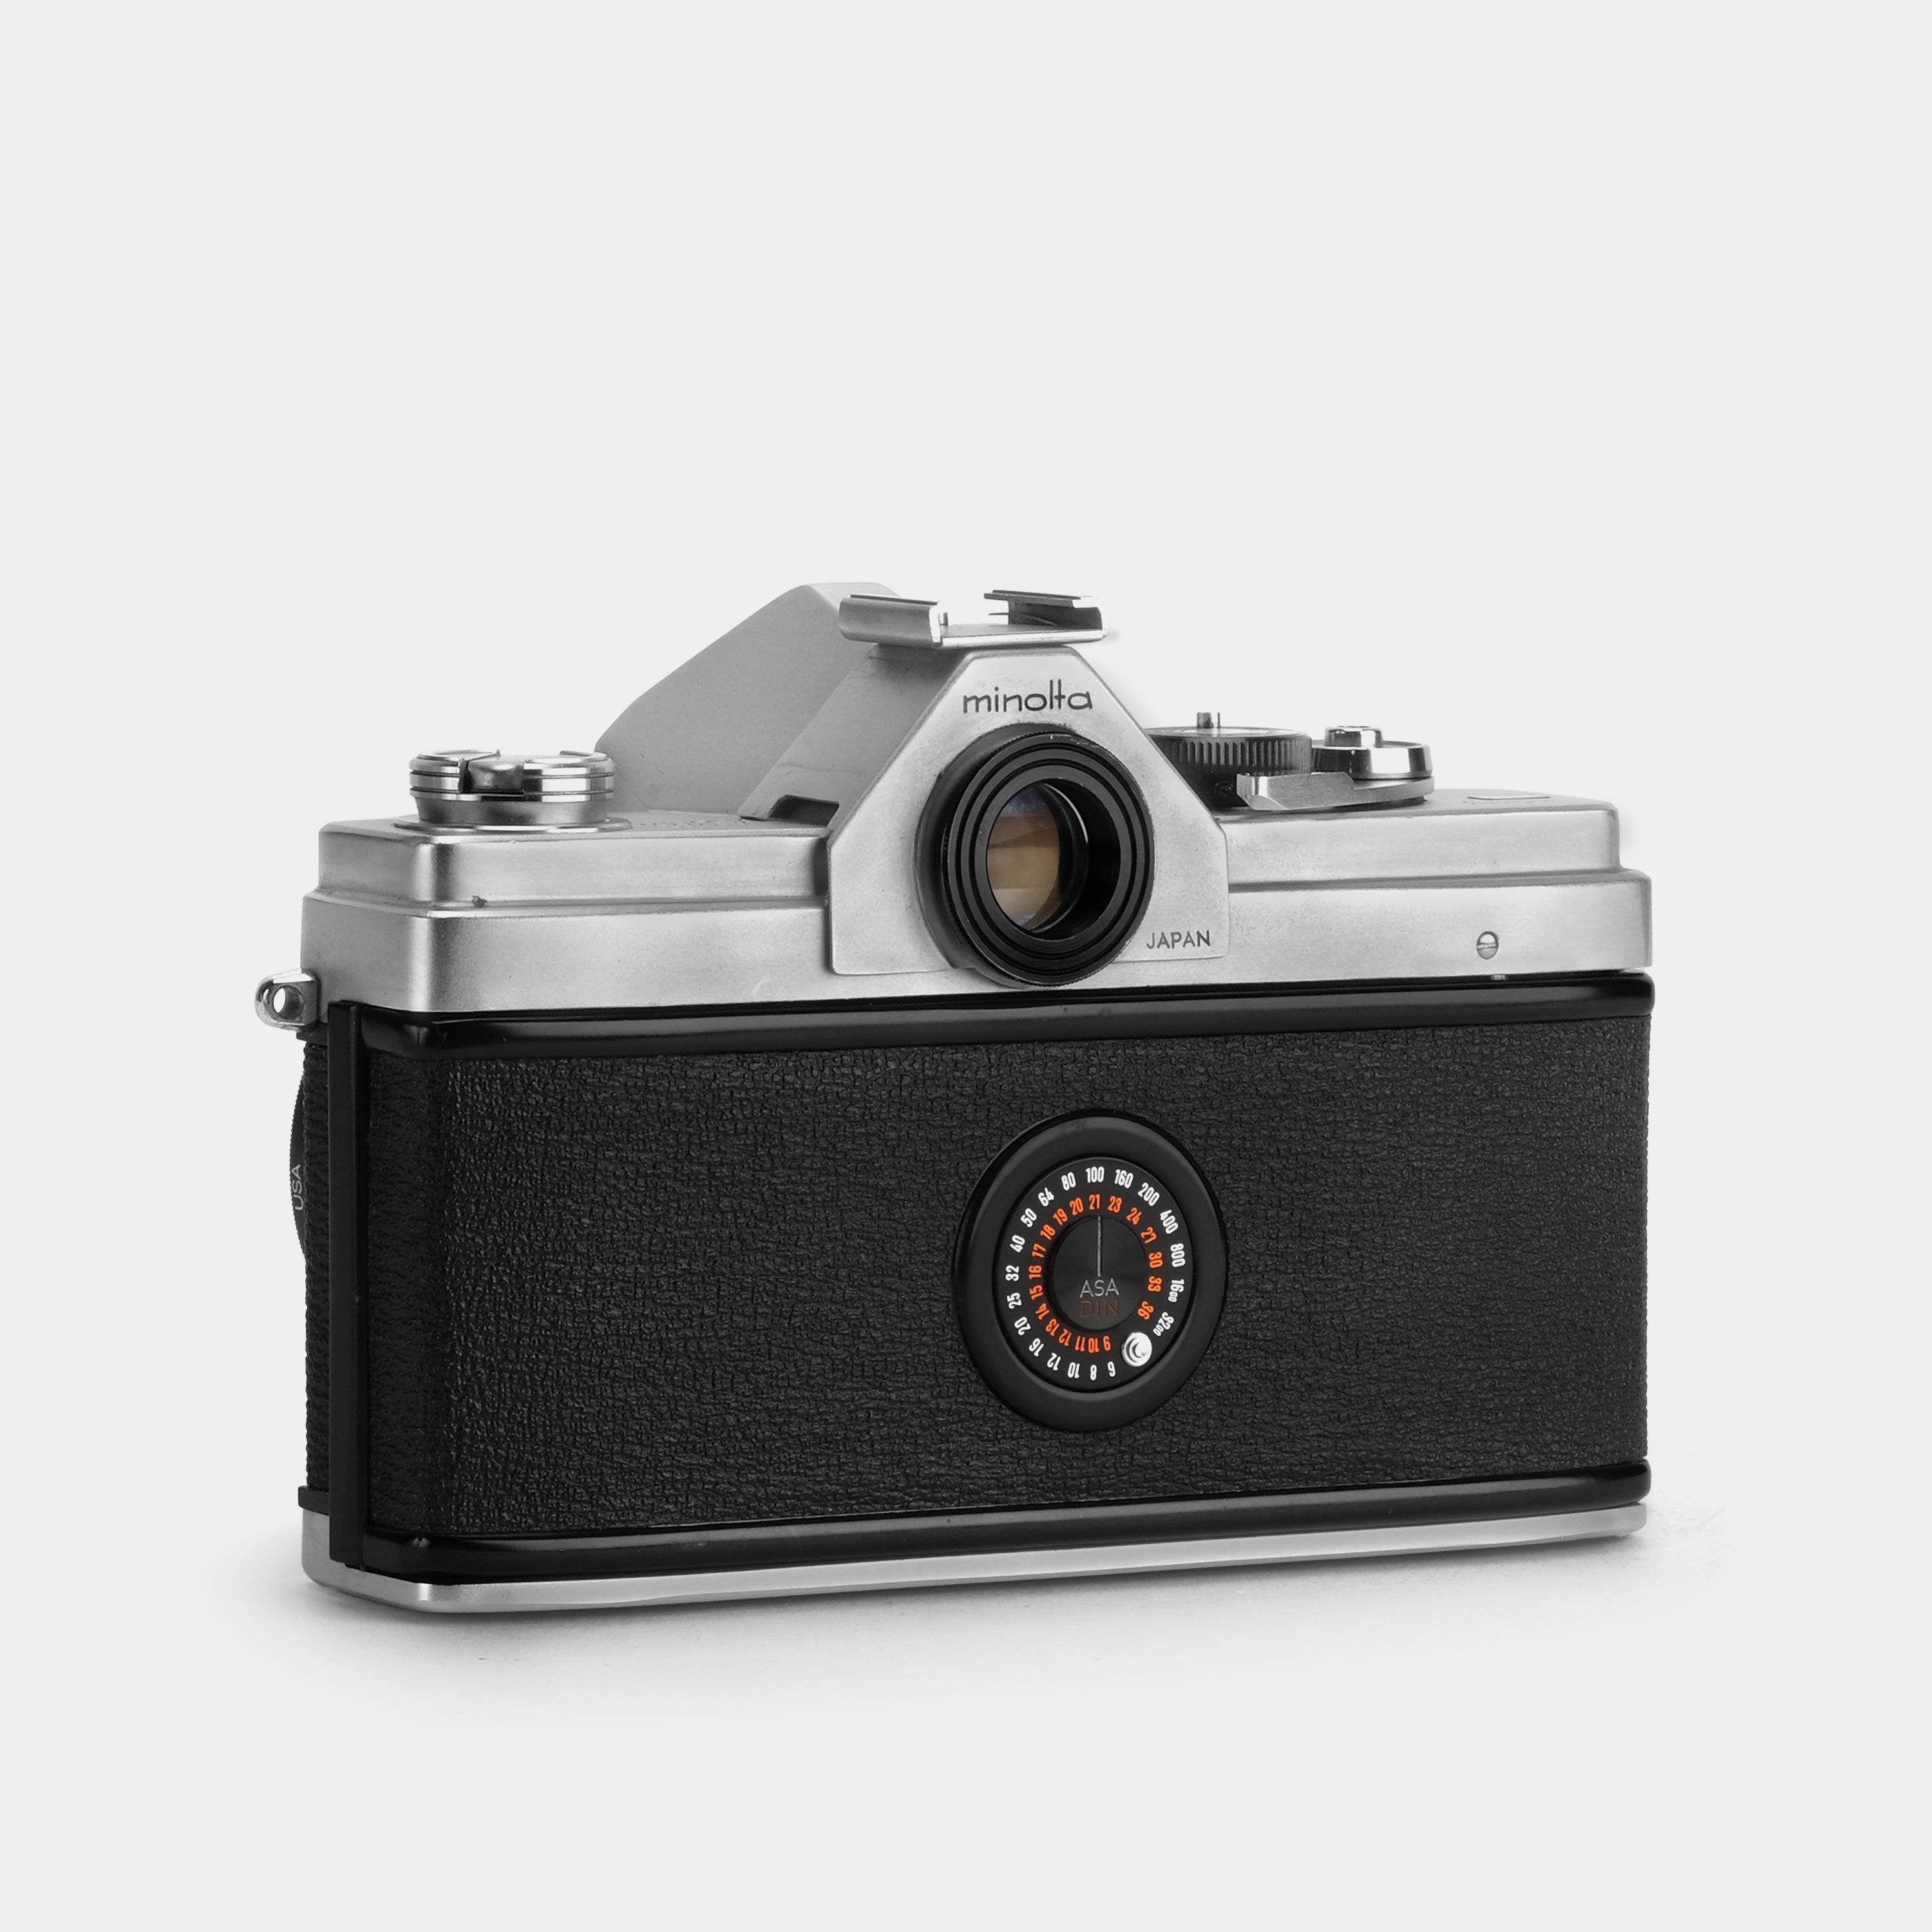 Minolta SR-1 35mm SLR Film Camera